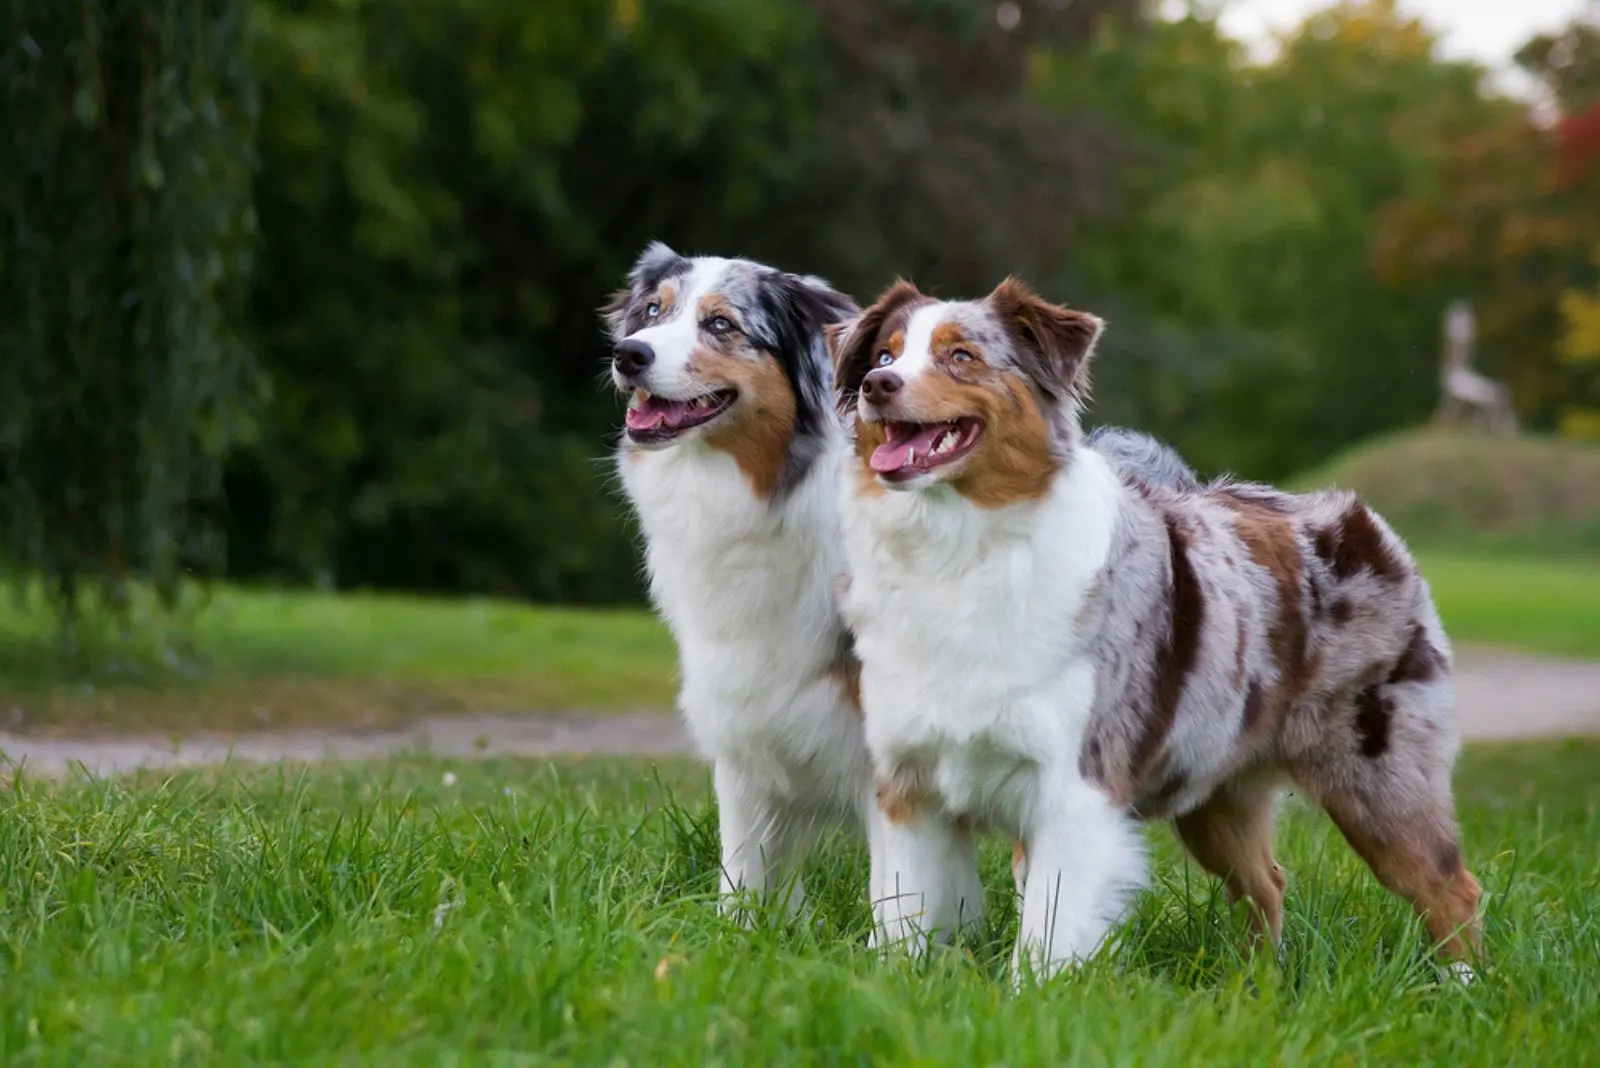 Two australian shepherd dogs standing